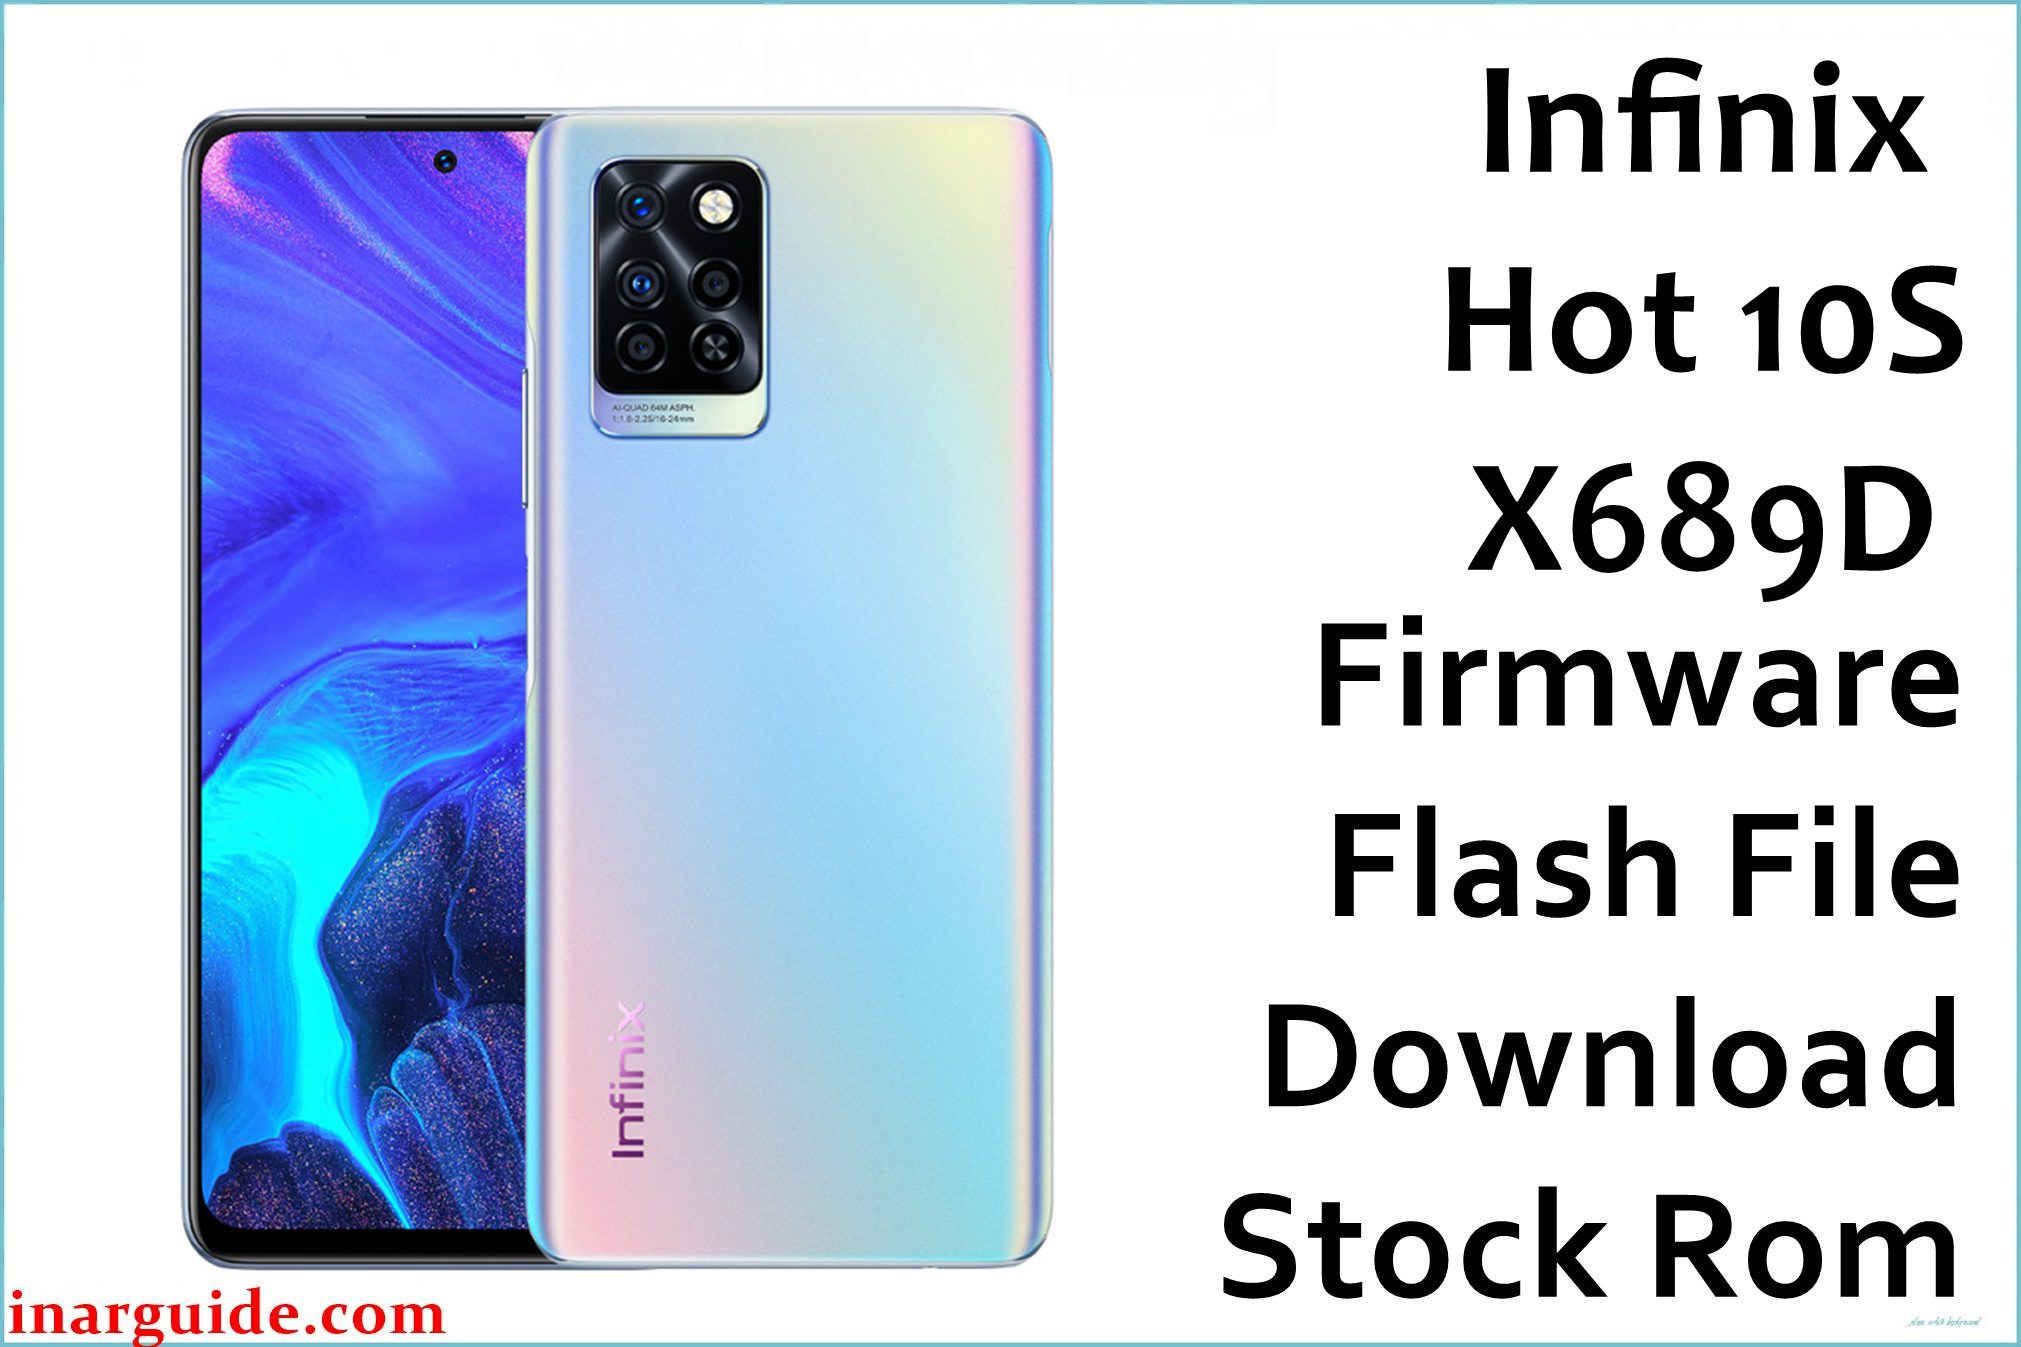 Infinix Hot 10S X689D